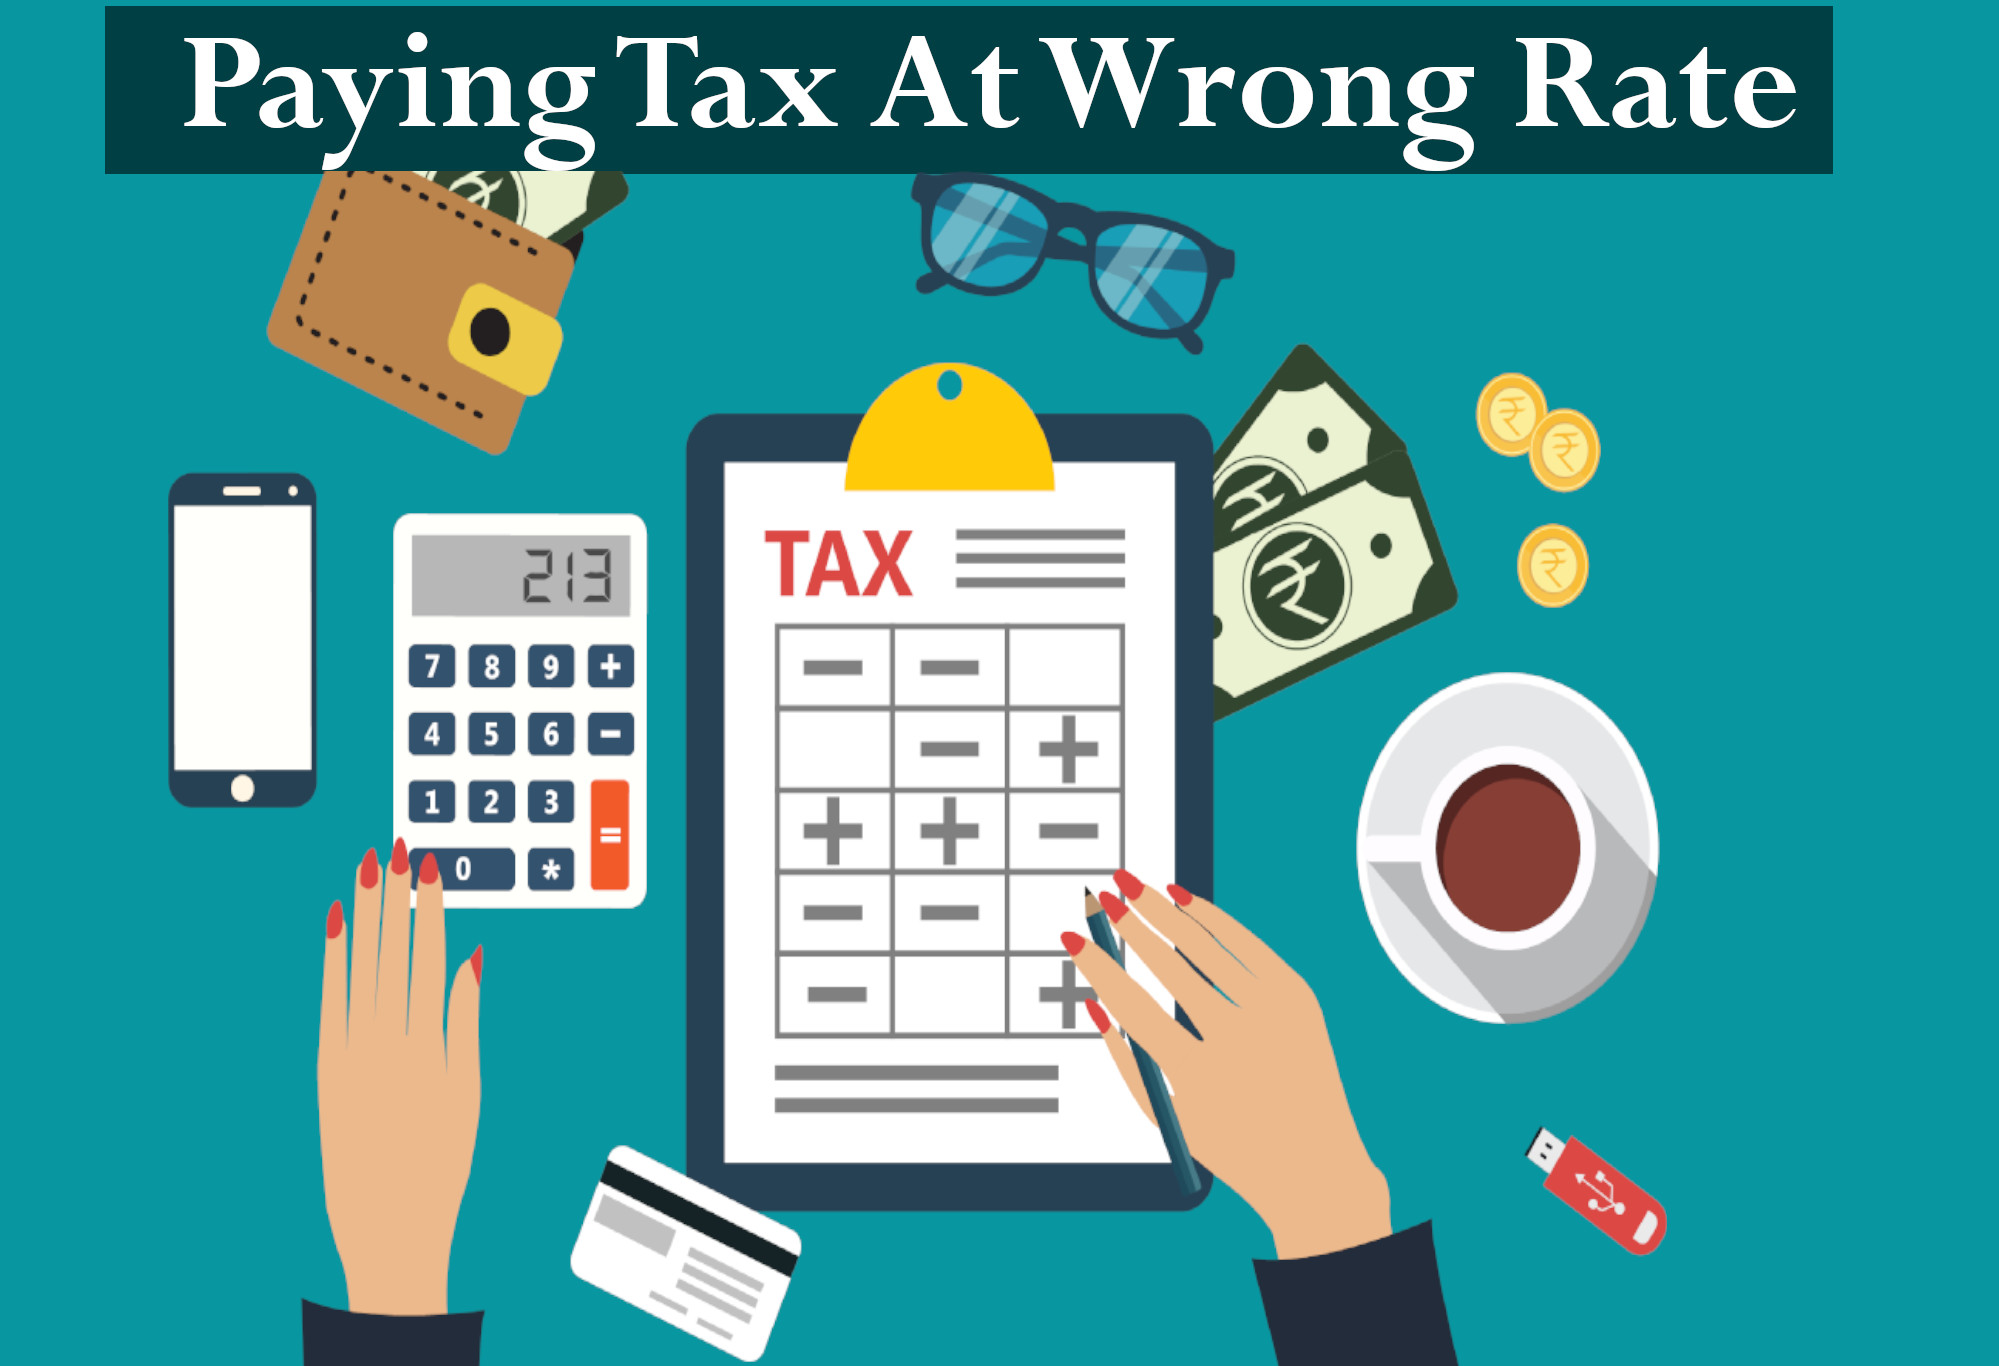 Tax at wrong rate